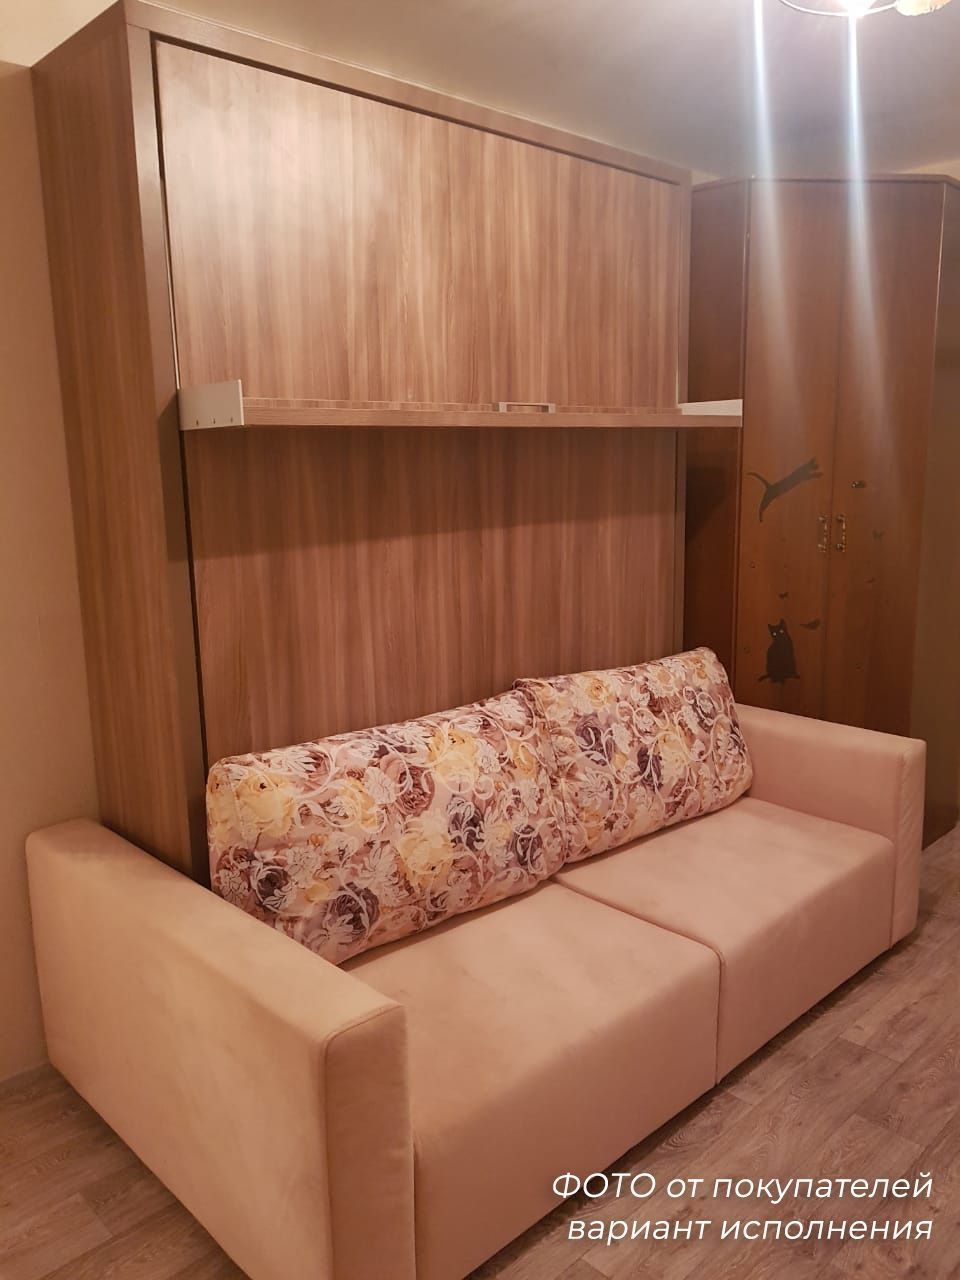 Кровать-трансформер встроенная с диваном